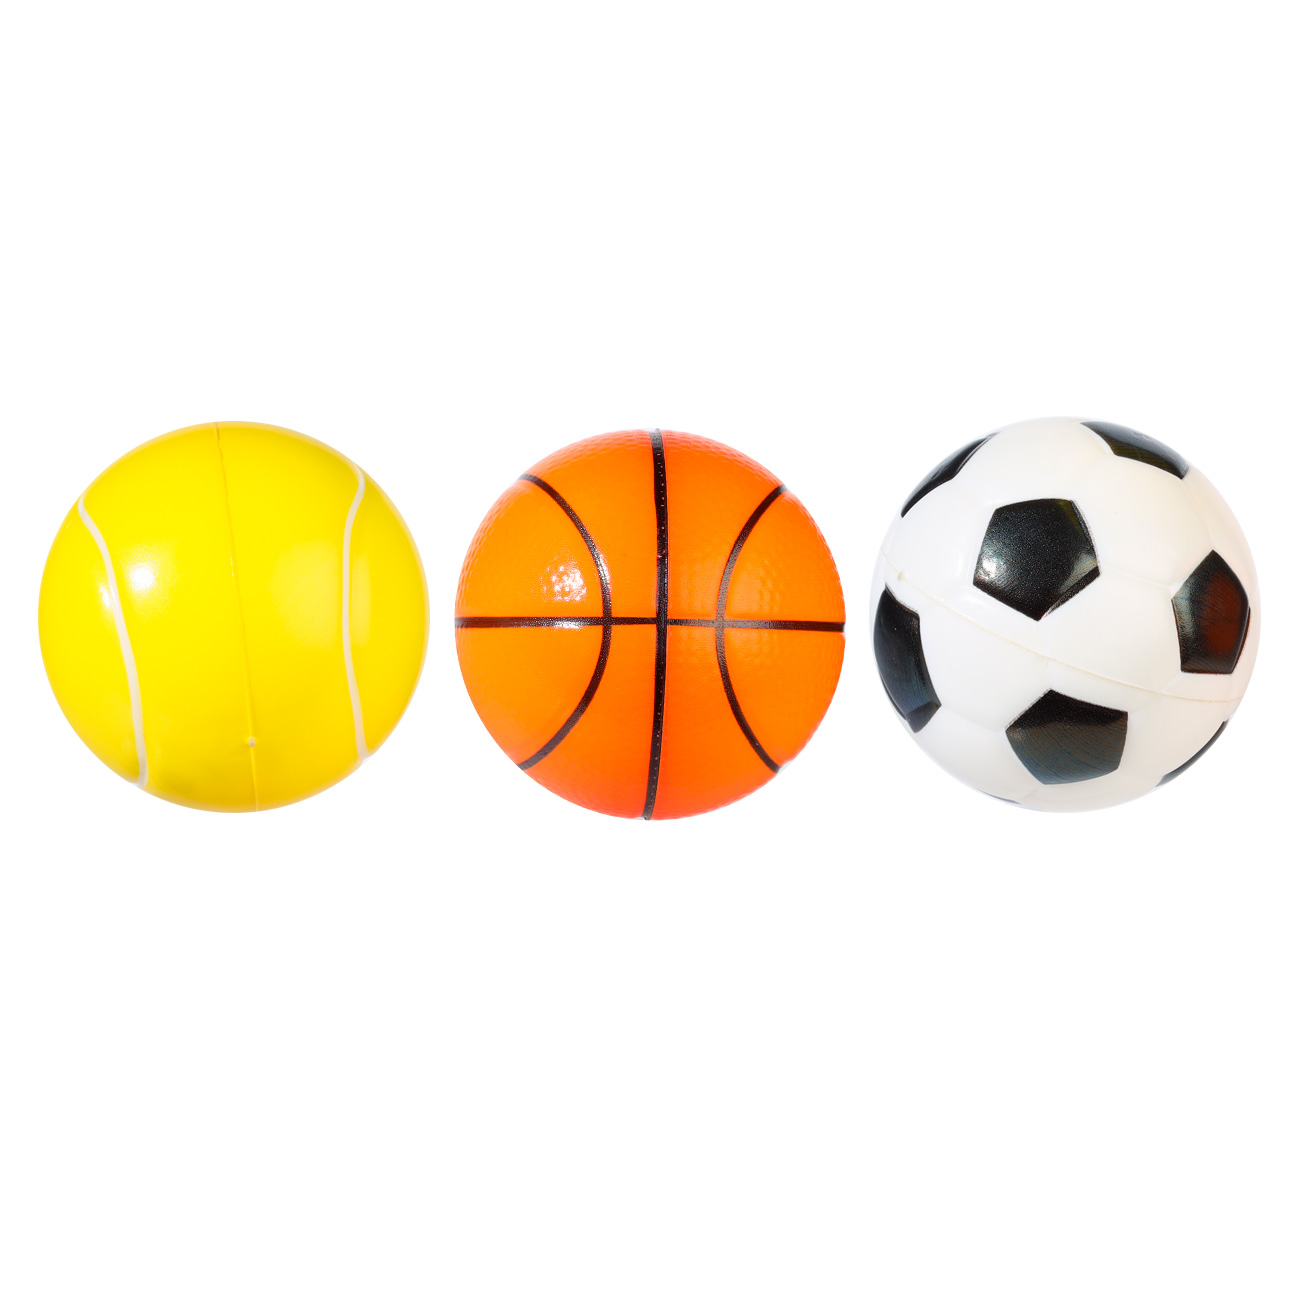 Мяч, 6 см, 3 шт, в сетке, полиуретан, цветной, Футбол/Баскетбол/Теннис, Game - фото 1